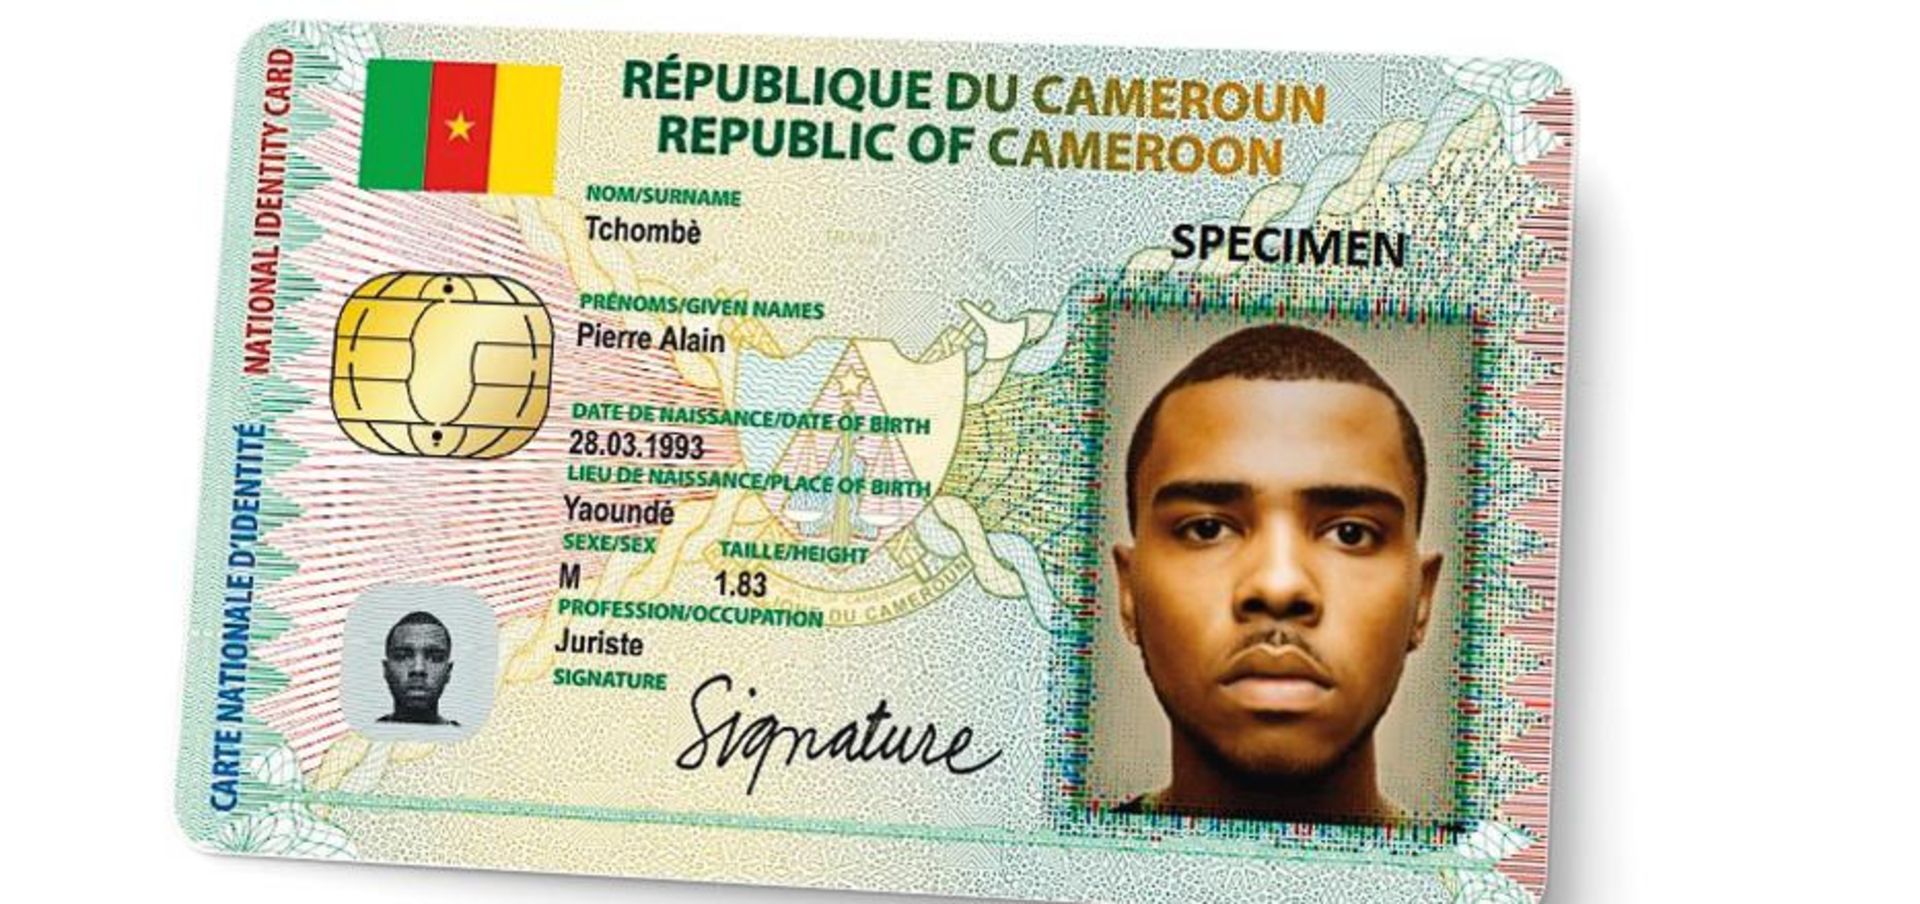 Cameroon ID Card